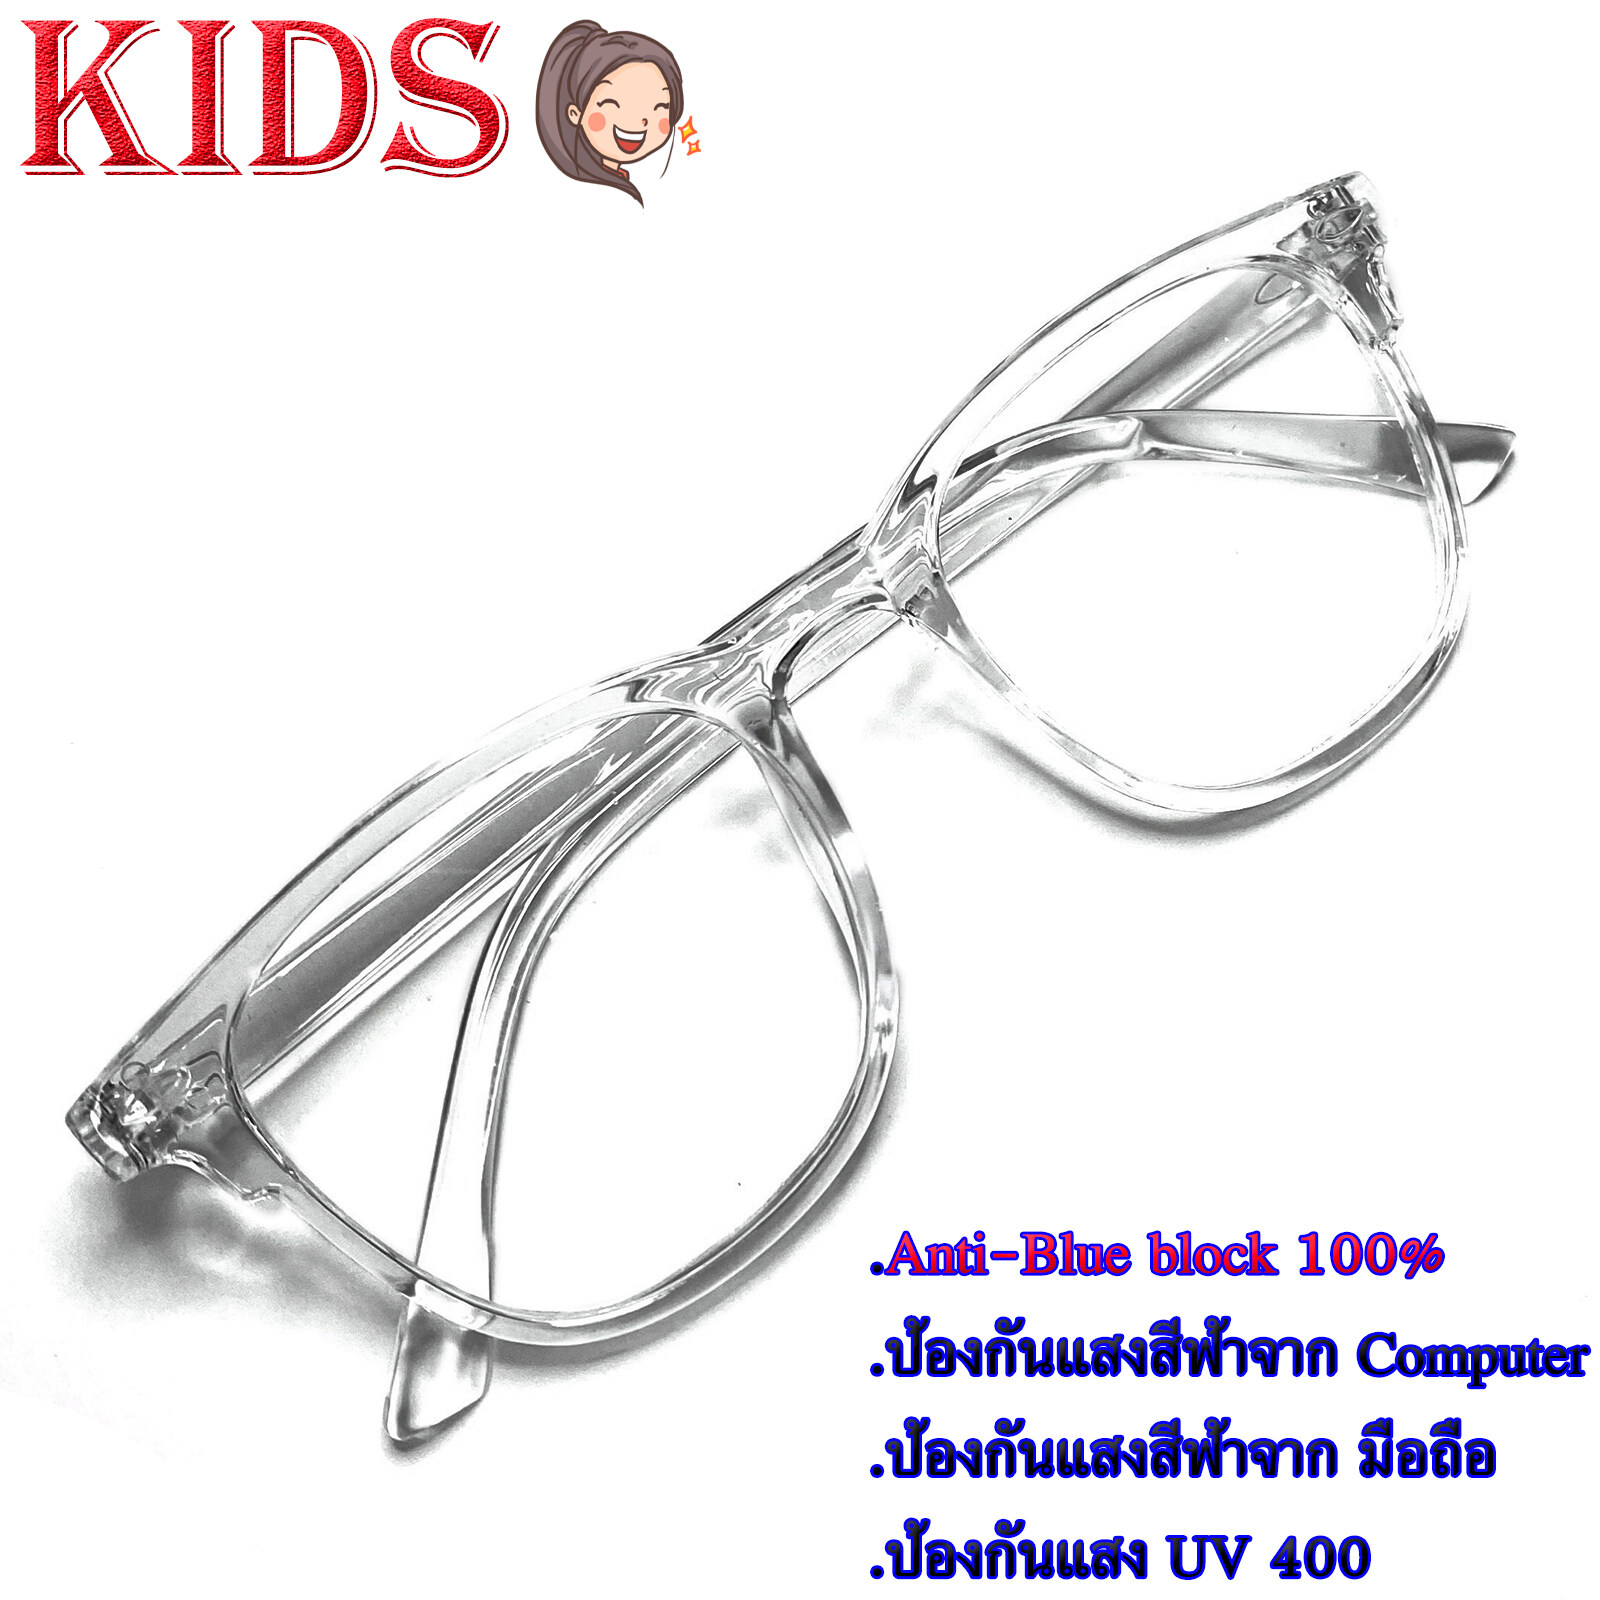 Blue Block แว่นตาเด็ก กรองแสงสีฟ้า กรองแสงคอม รุ่น 1111 พลาสติก พีซี เกรด เอ ขาข้อต่อ กรองแสงสูงสุด95% กัน UV 100% Glasses